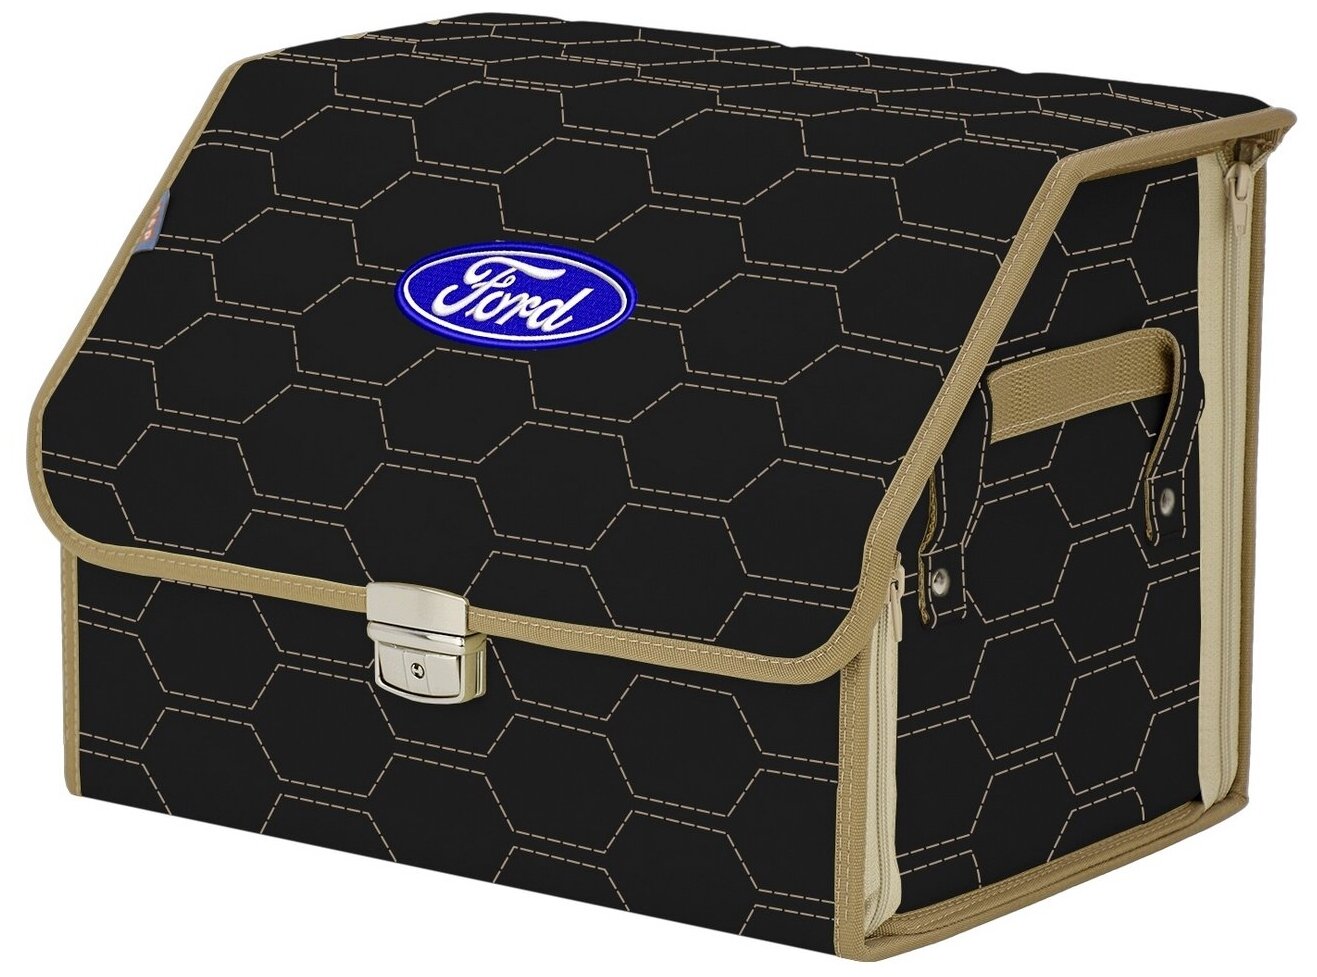 Органайзер-саквояж в багажник "Союз Премиум" (размер M). Цвет: черный с бежевой прострочкой Соты и вышивкой Ford (Форд).